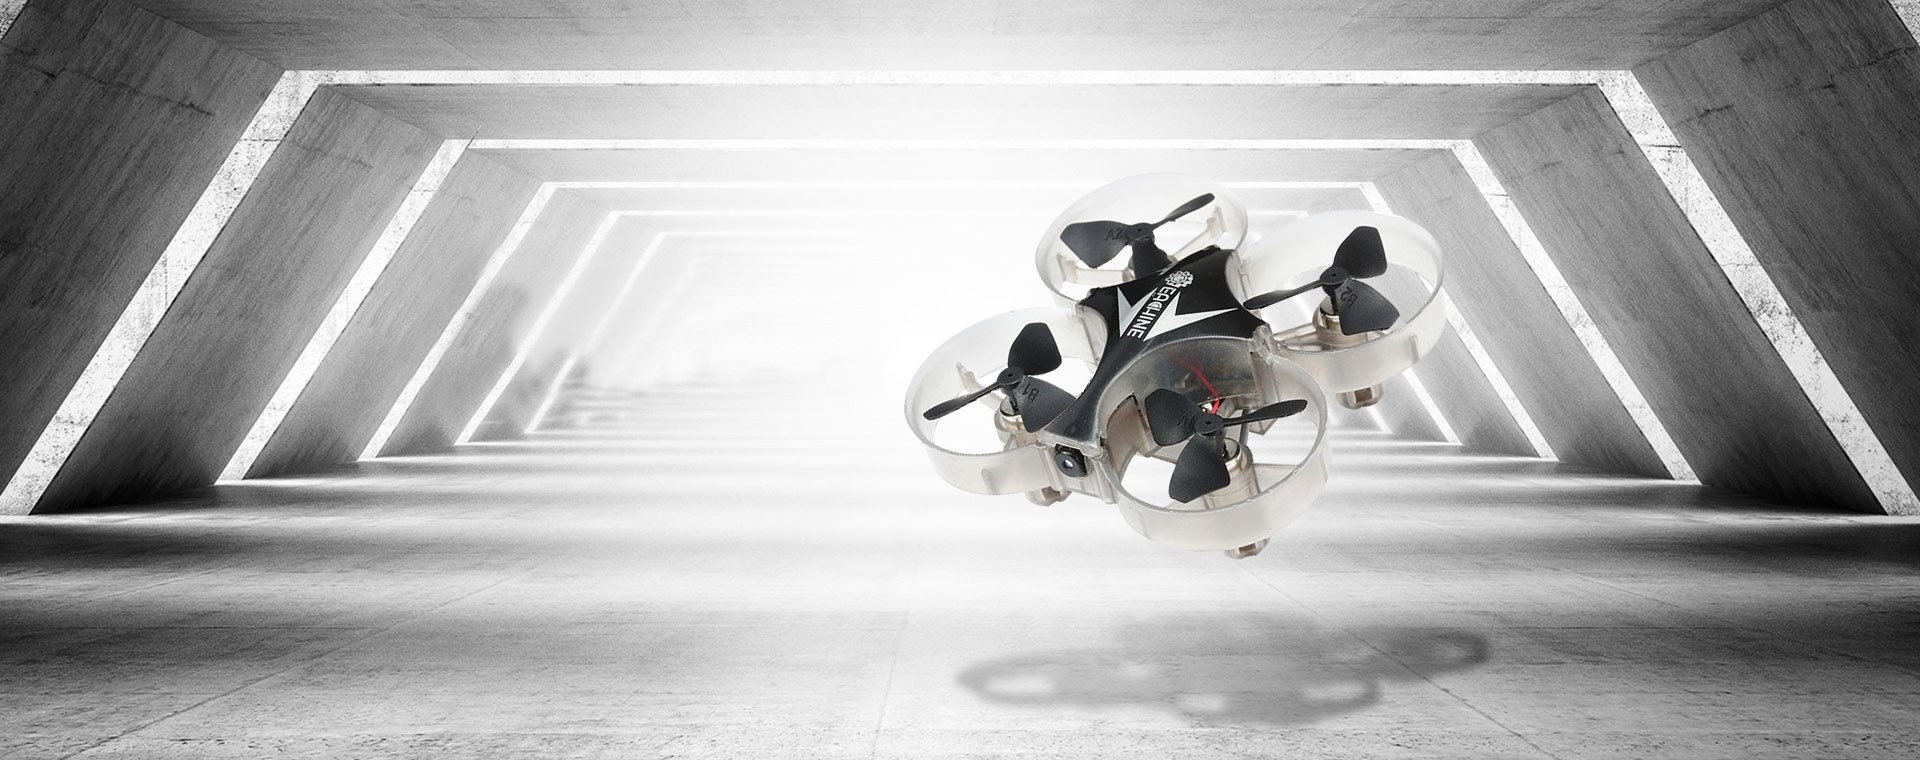 Eachine X012 FPV Racingdrone Drone Quad